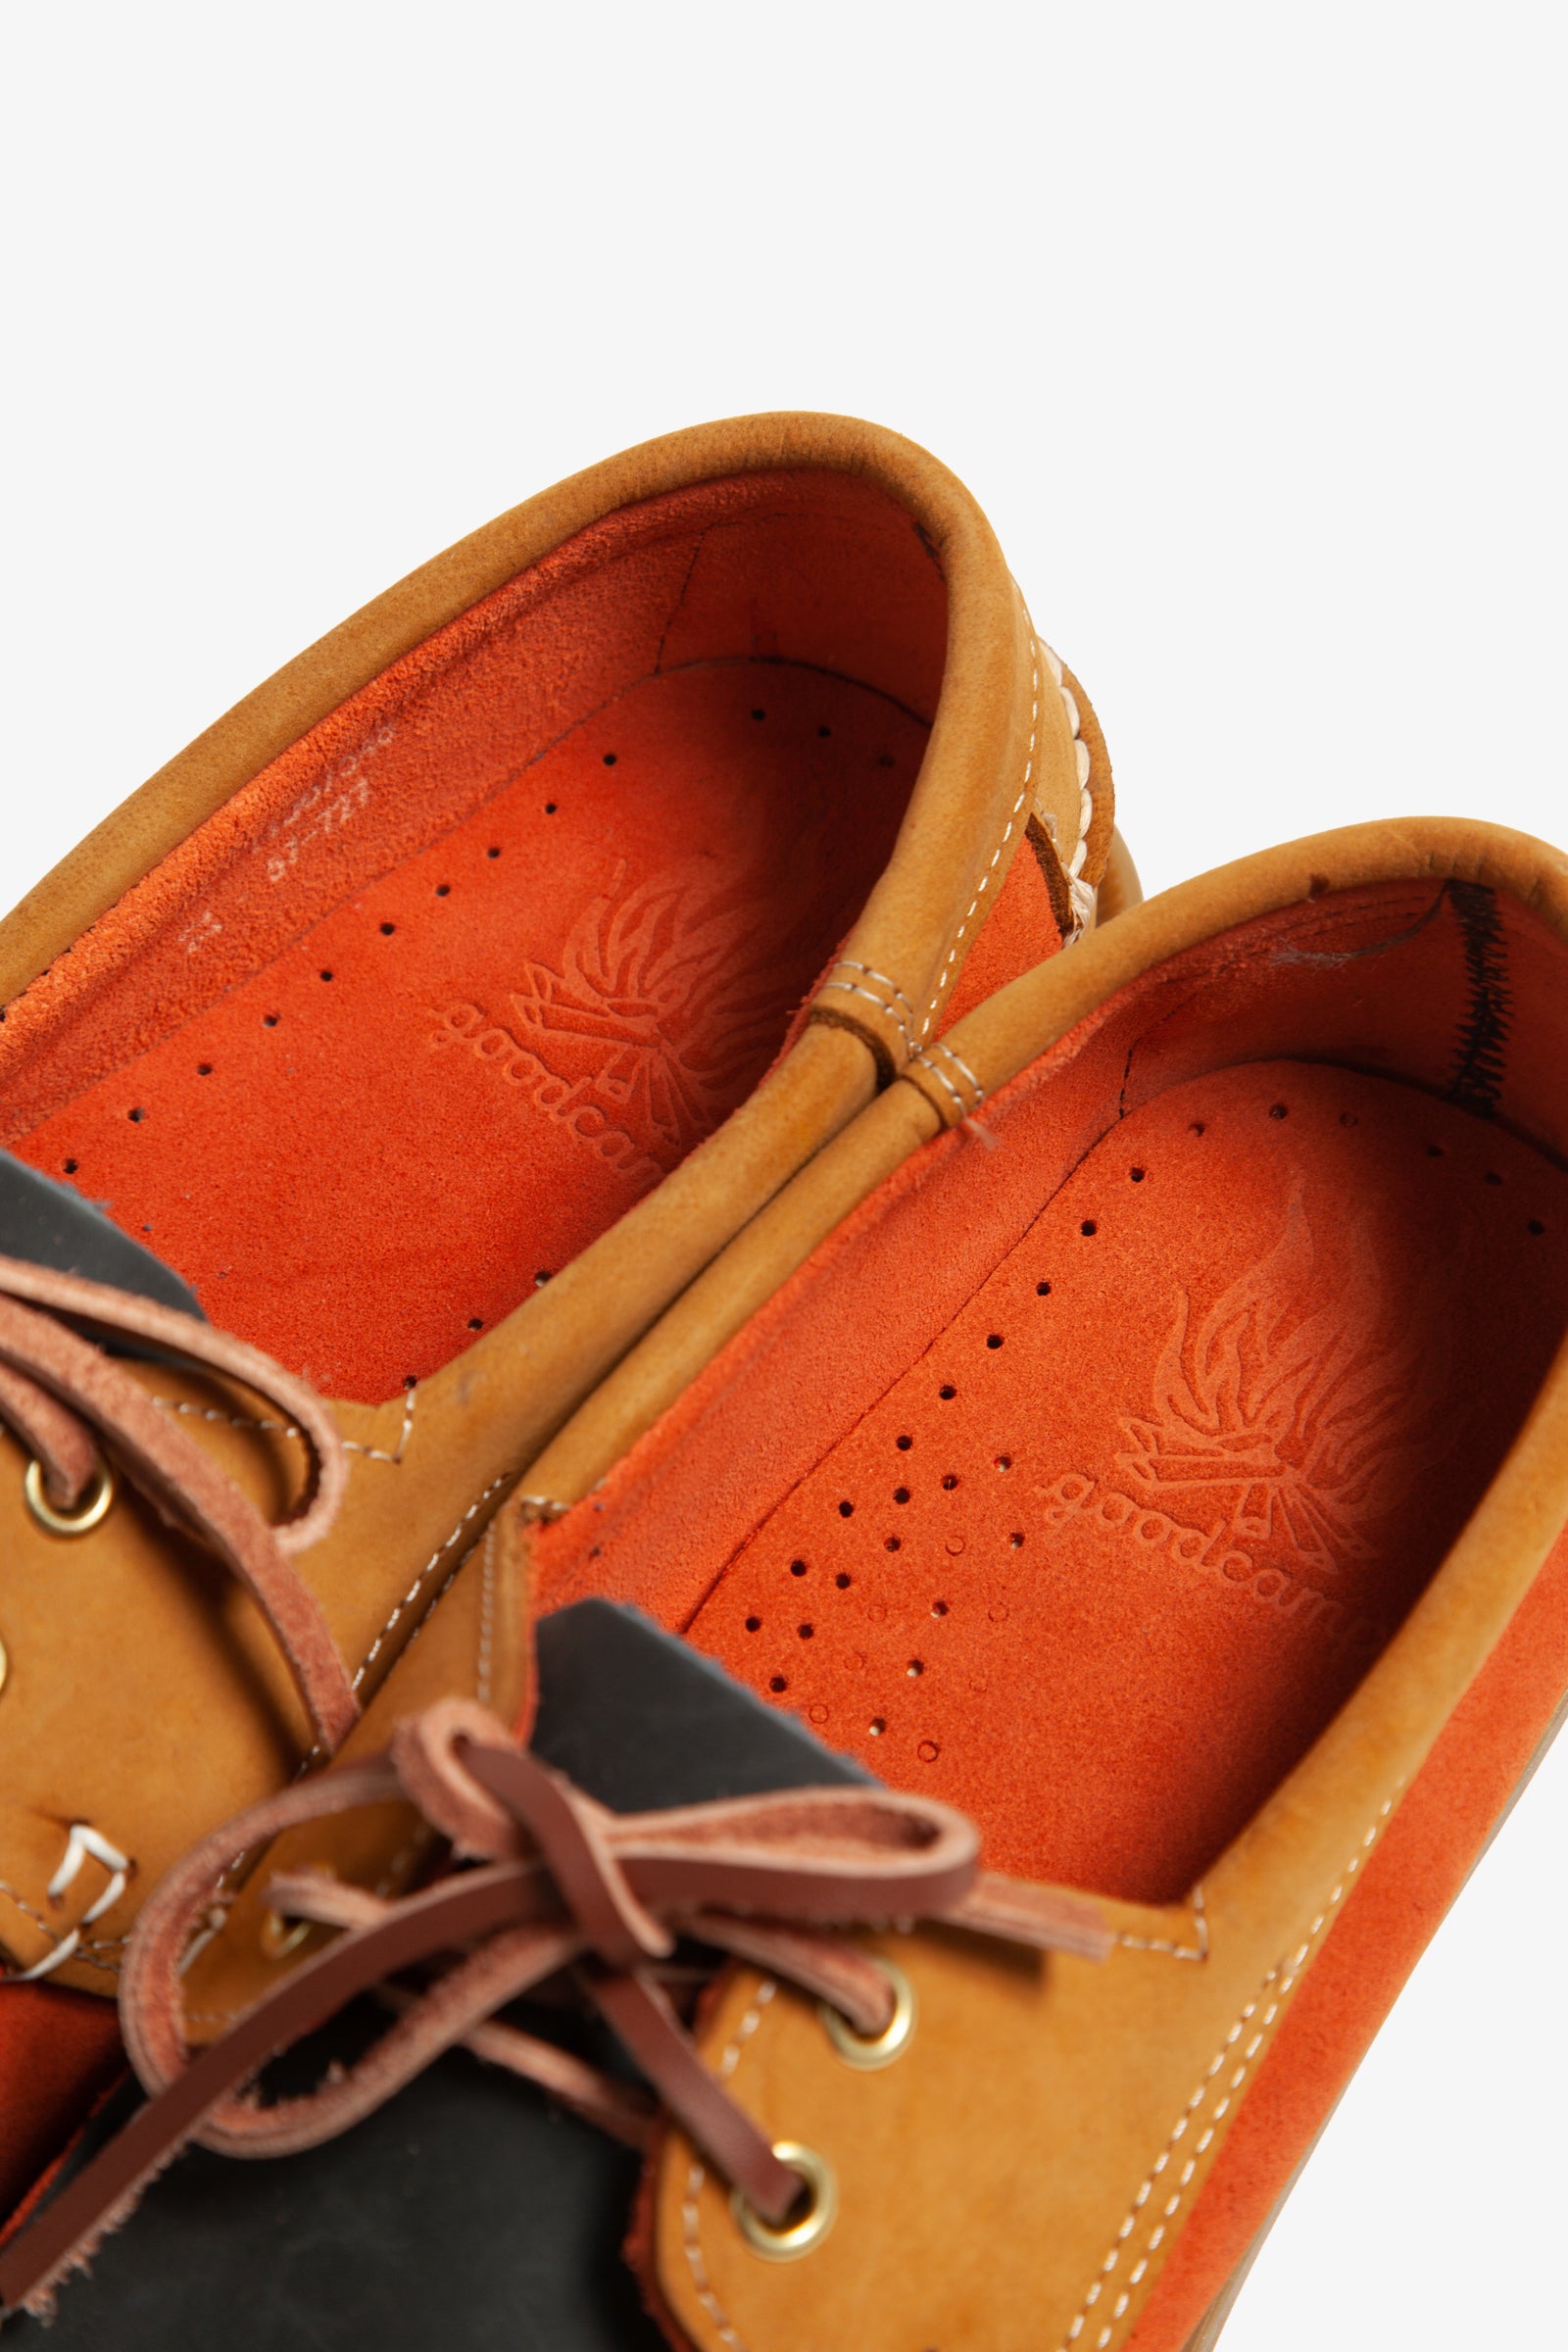 Goodcamp - Deck Loafer Shoes - Orange Multi